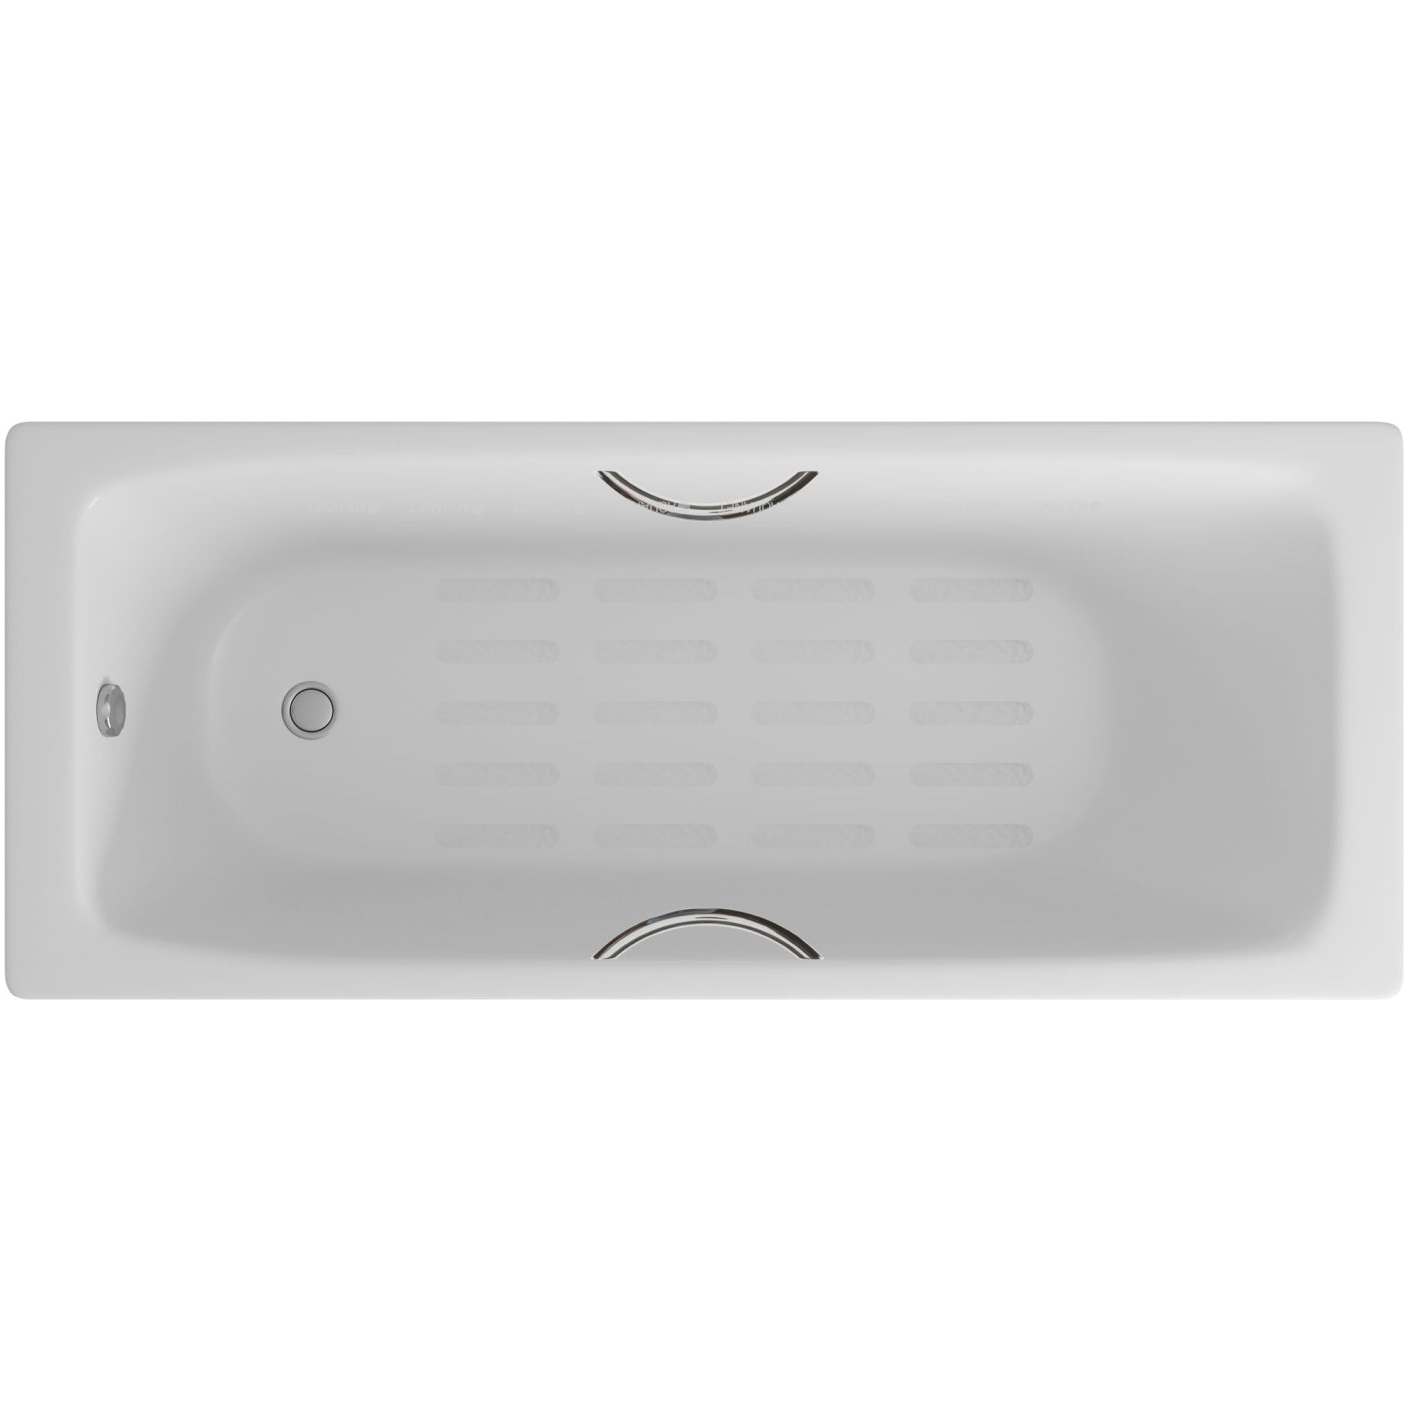 Ванна чугунная Delice Biove DLR220509R-AS 170х75 (белый), встраиваемая, с антискользящим покрытием и ручками